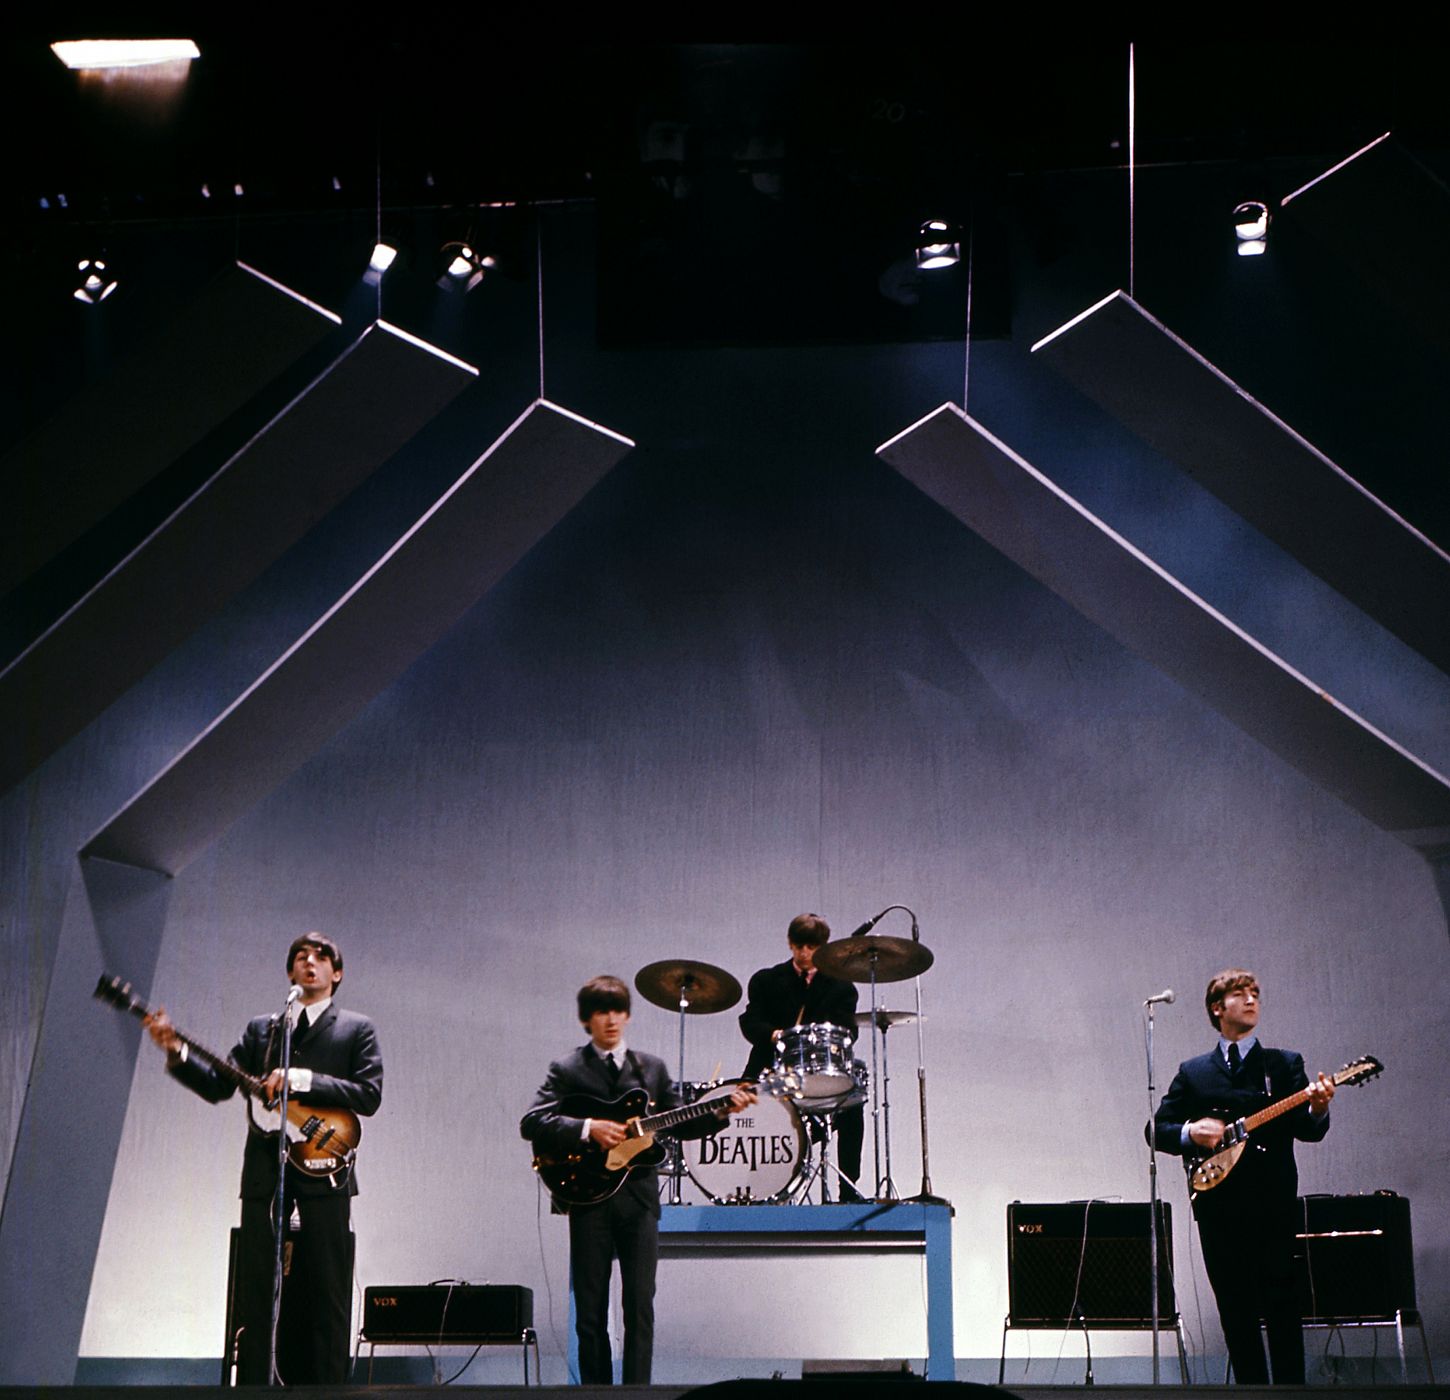 El 5 de octubre de 1962 los Beatles publicó su primer single, "Love me do"